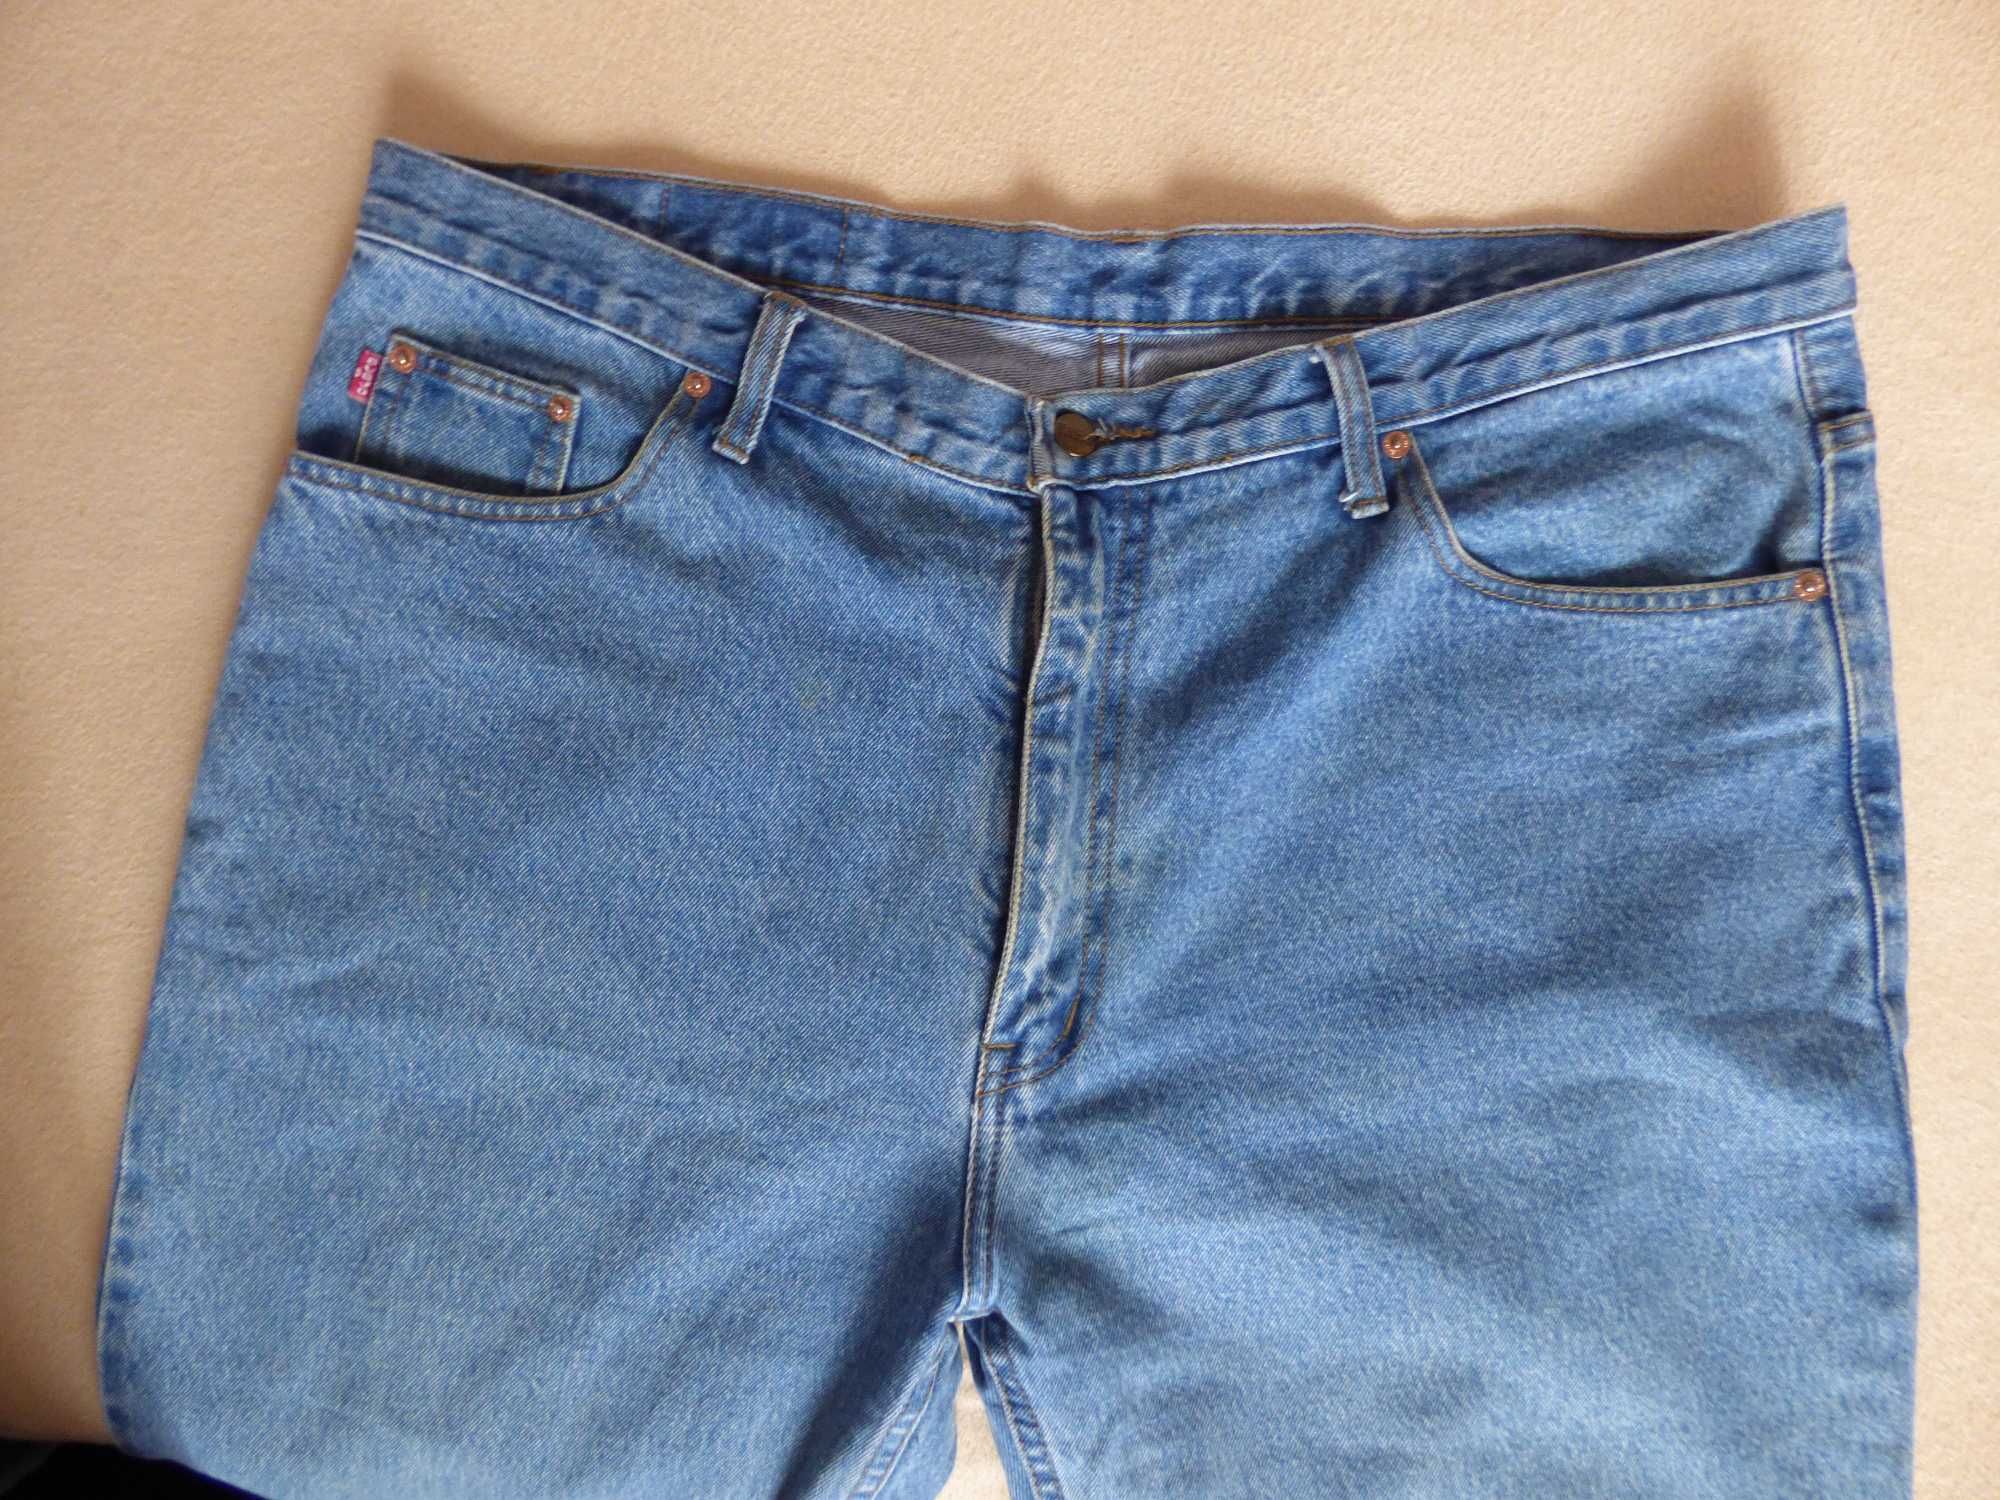 Spodnie męskie jeans rozm. 42